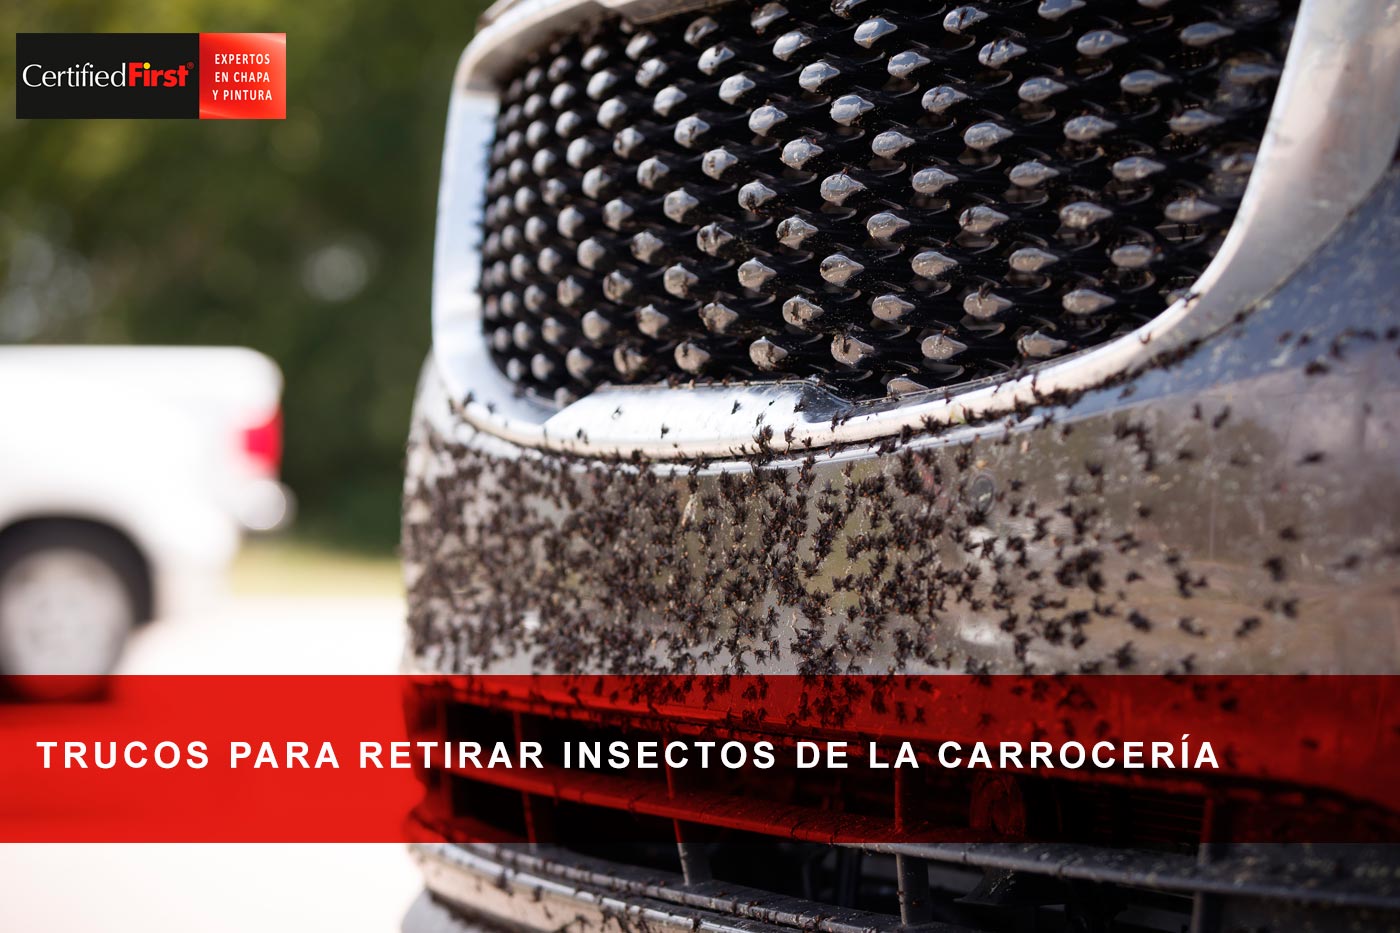 Trucos para retirar insectos de la carrocería cuidando la pintura del coche